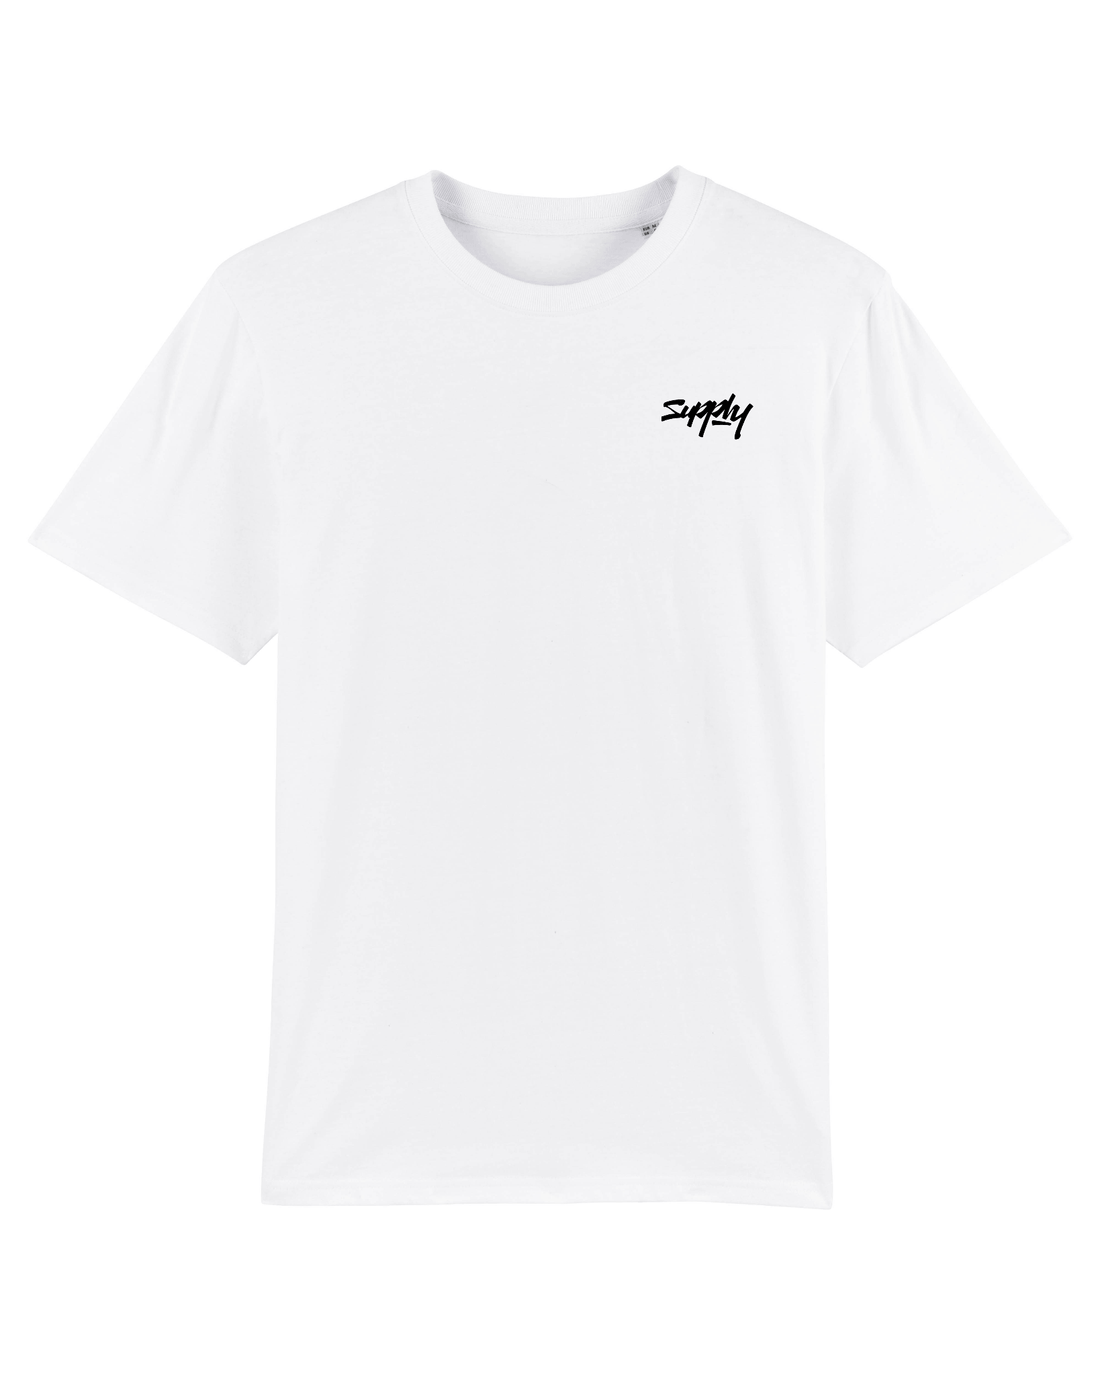 White Skater T-Shirt, Supply V2 Front Print